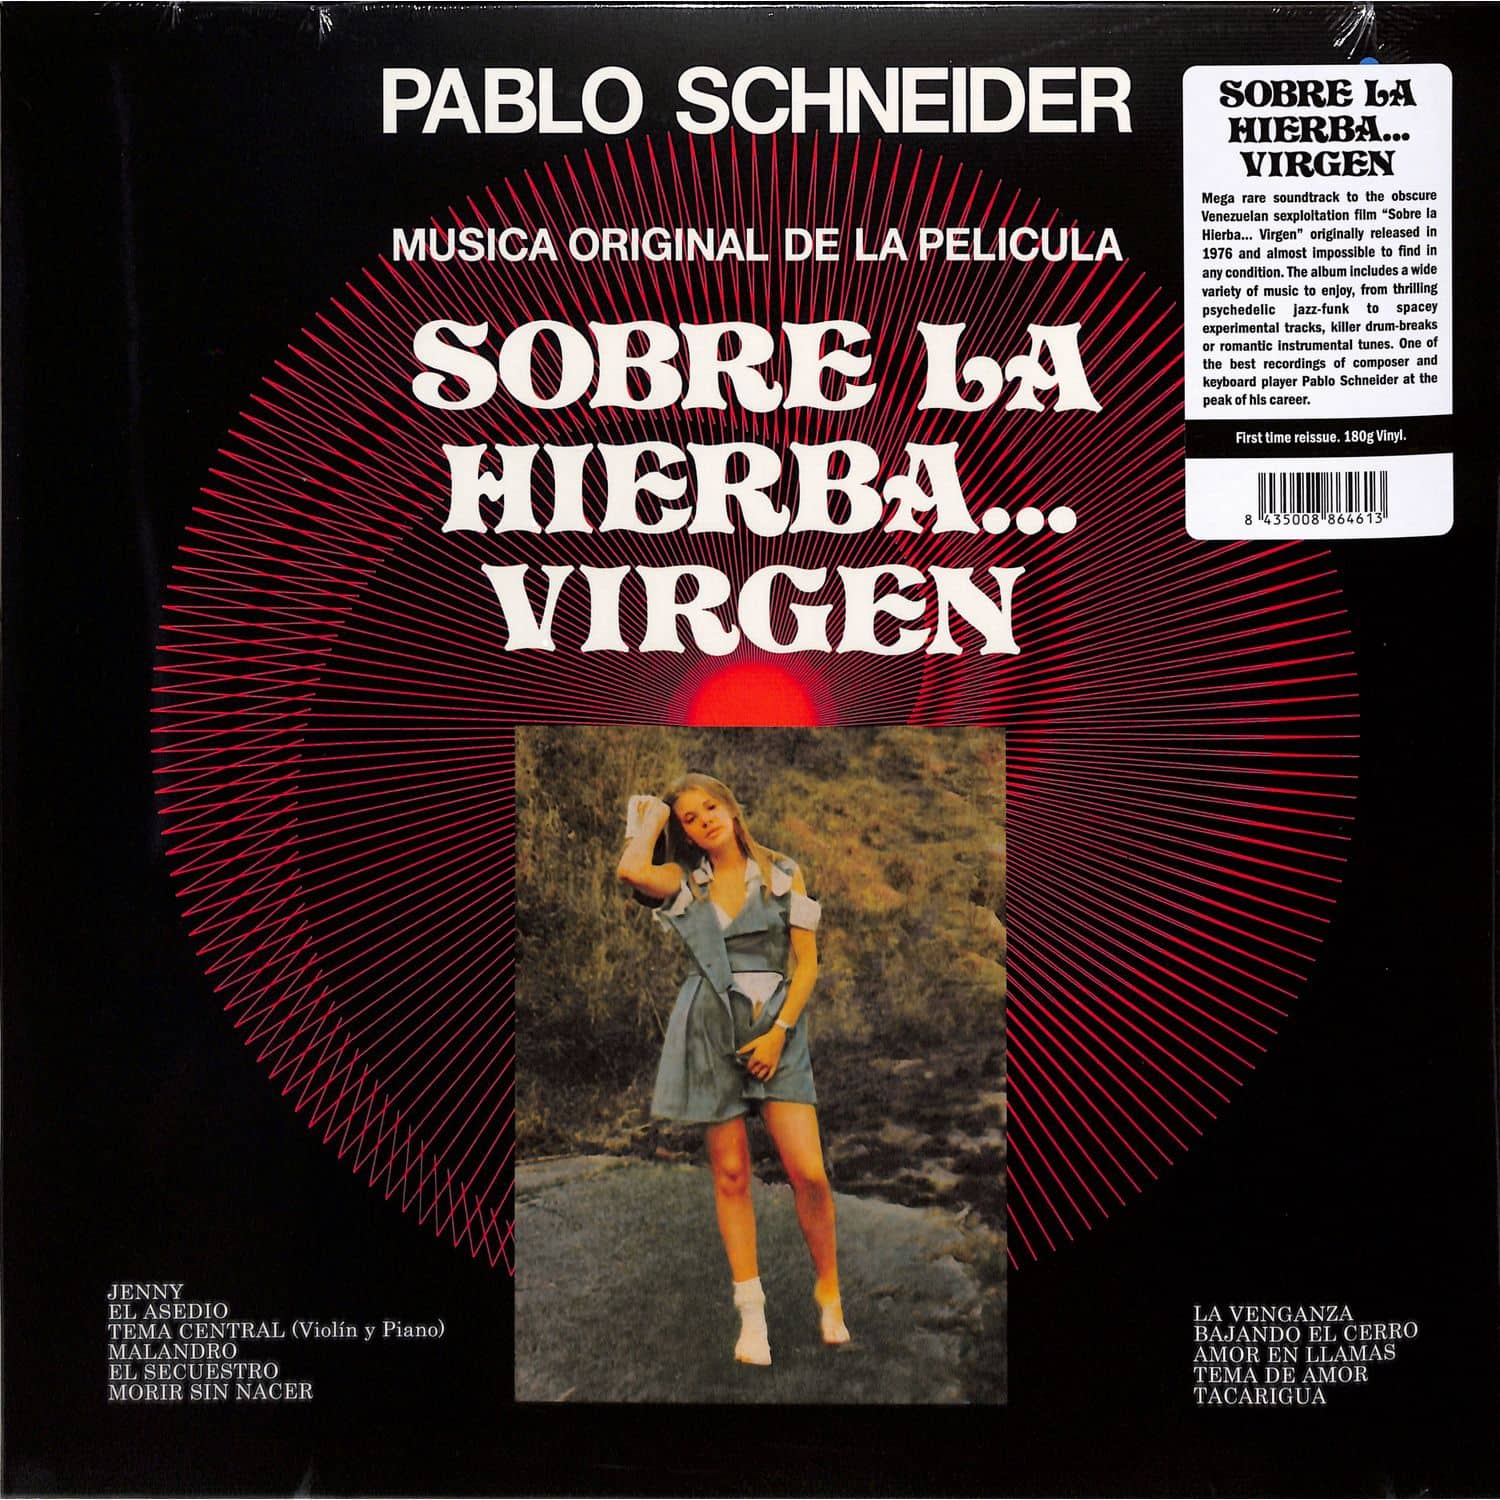 Pablo Schneider - SOBRE LA HIERBA... VIRGEN O.S.T. 